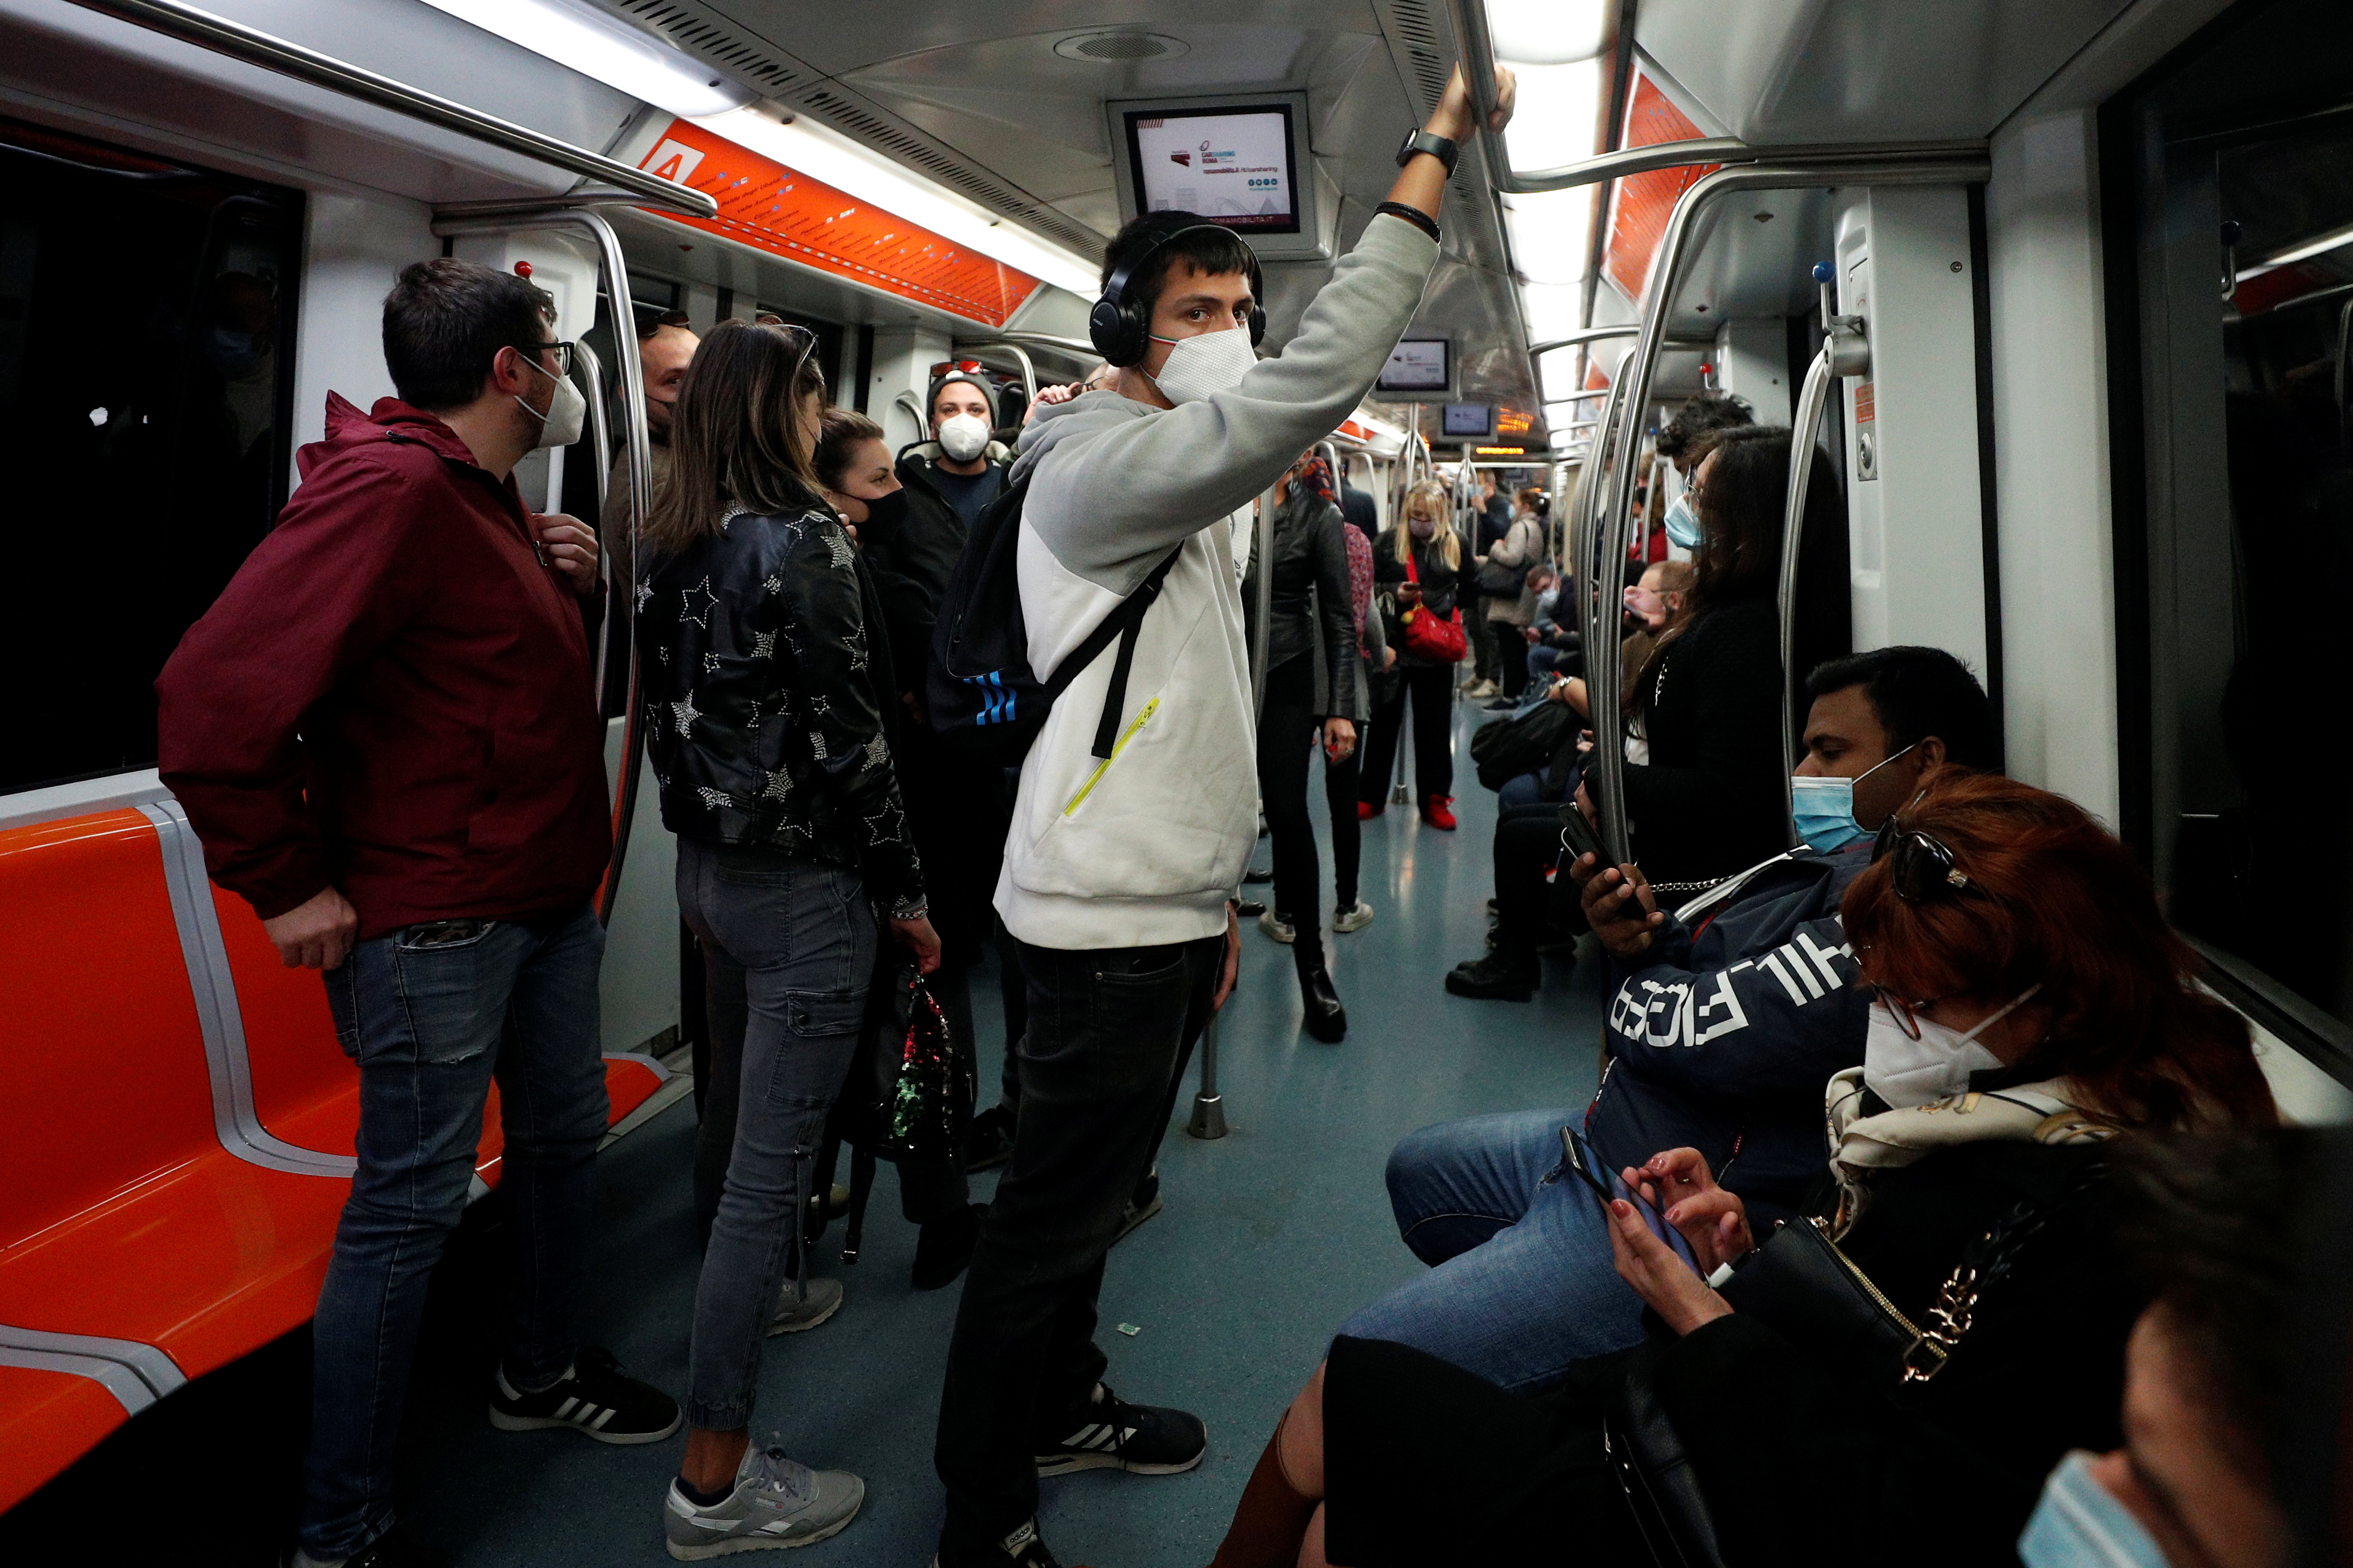 Pasajeros con máscaras faciales viajan en el metro de Roma, Italia. REUTERS/Guglielmo Mangiapane